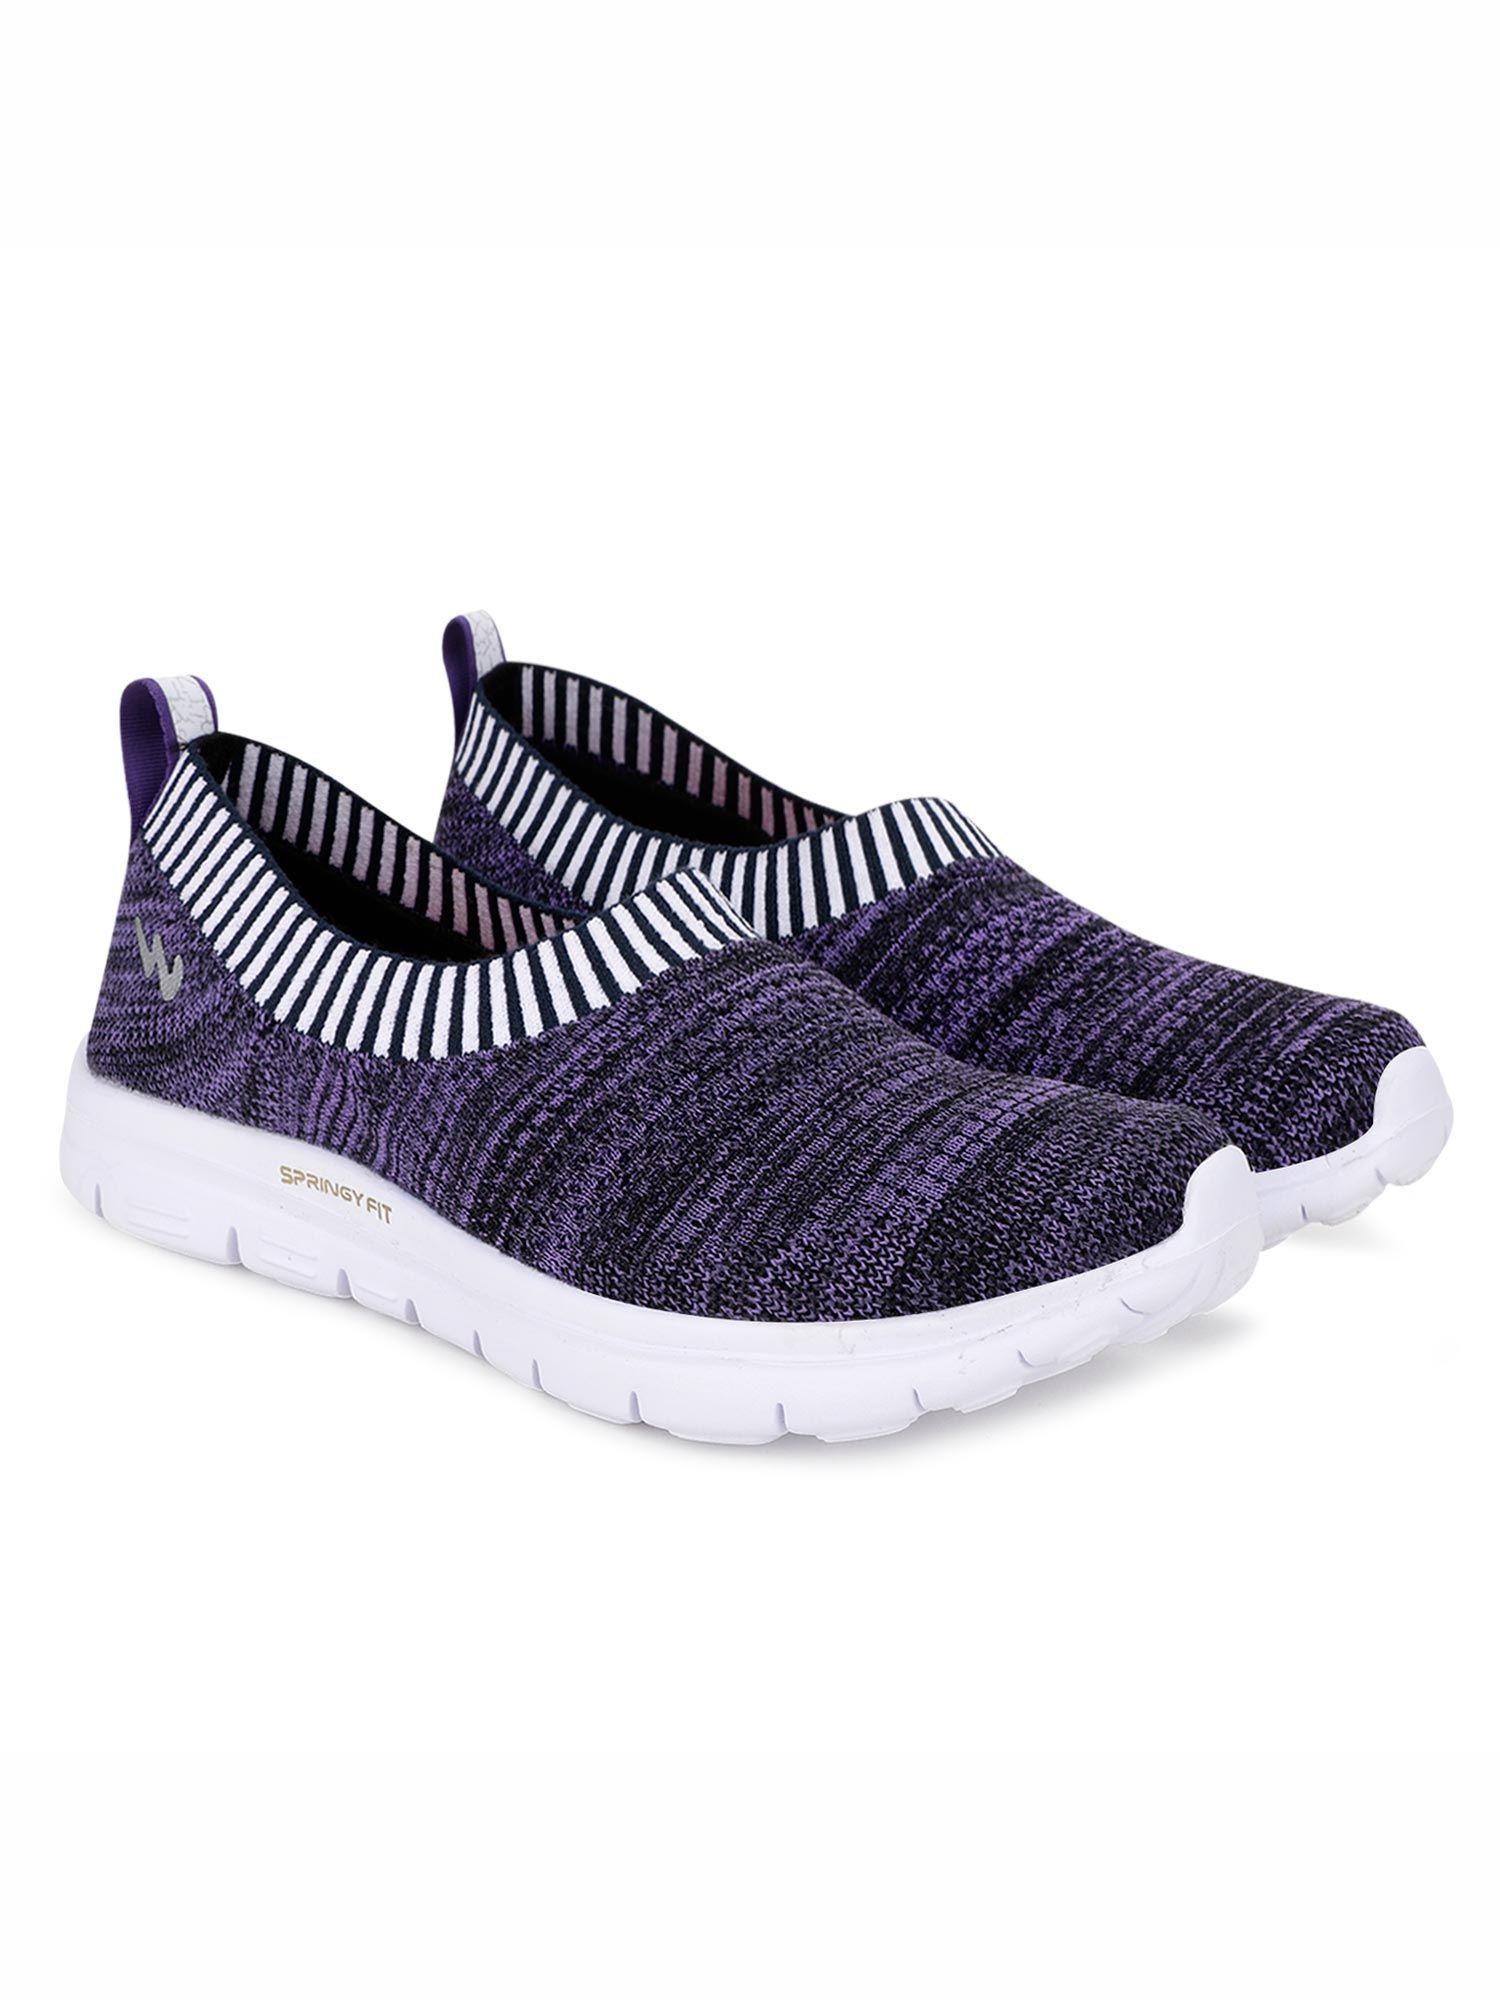 purple walking shoes for women